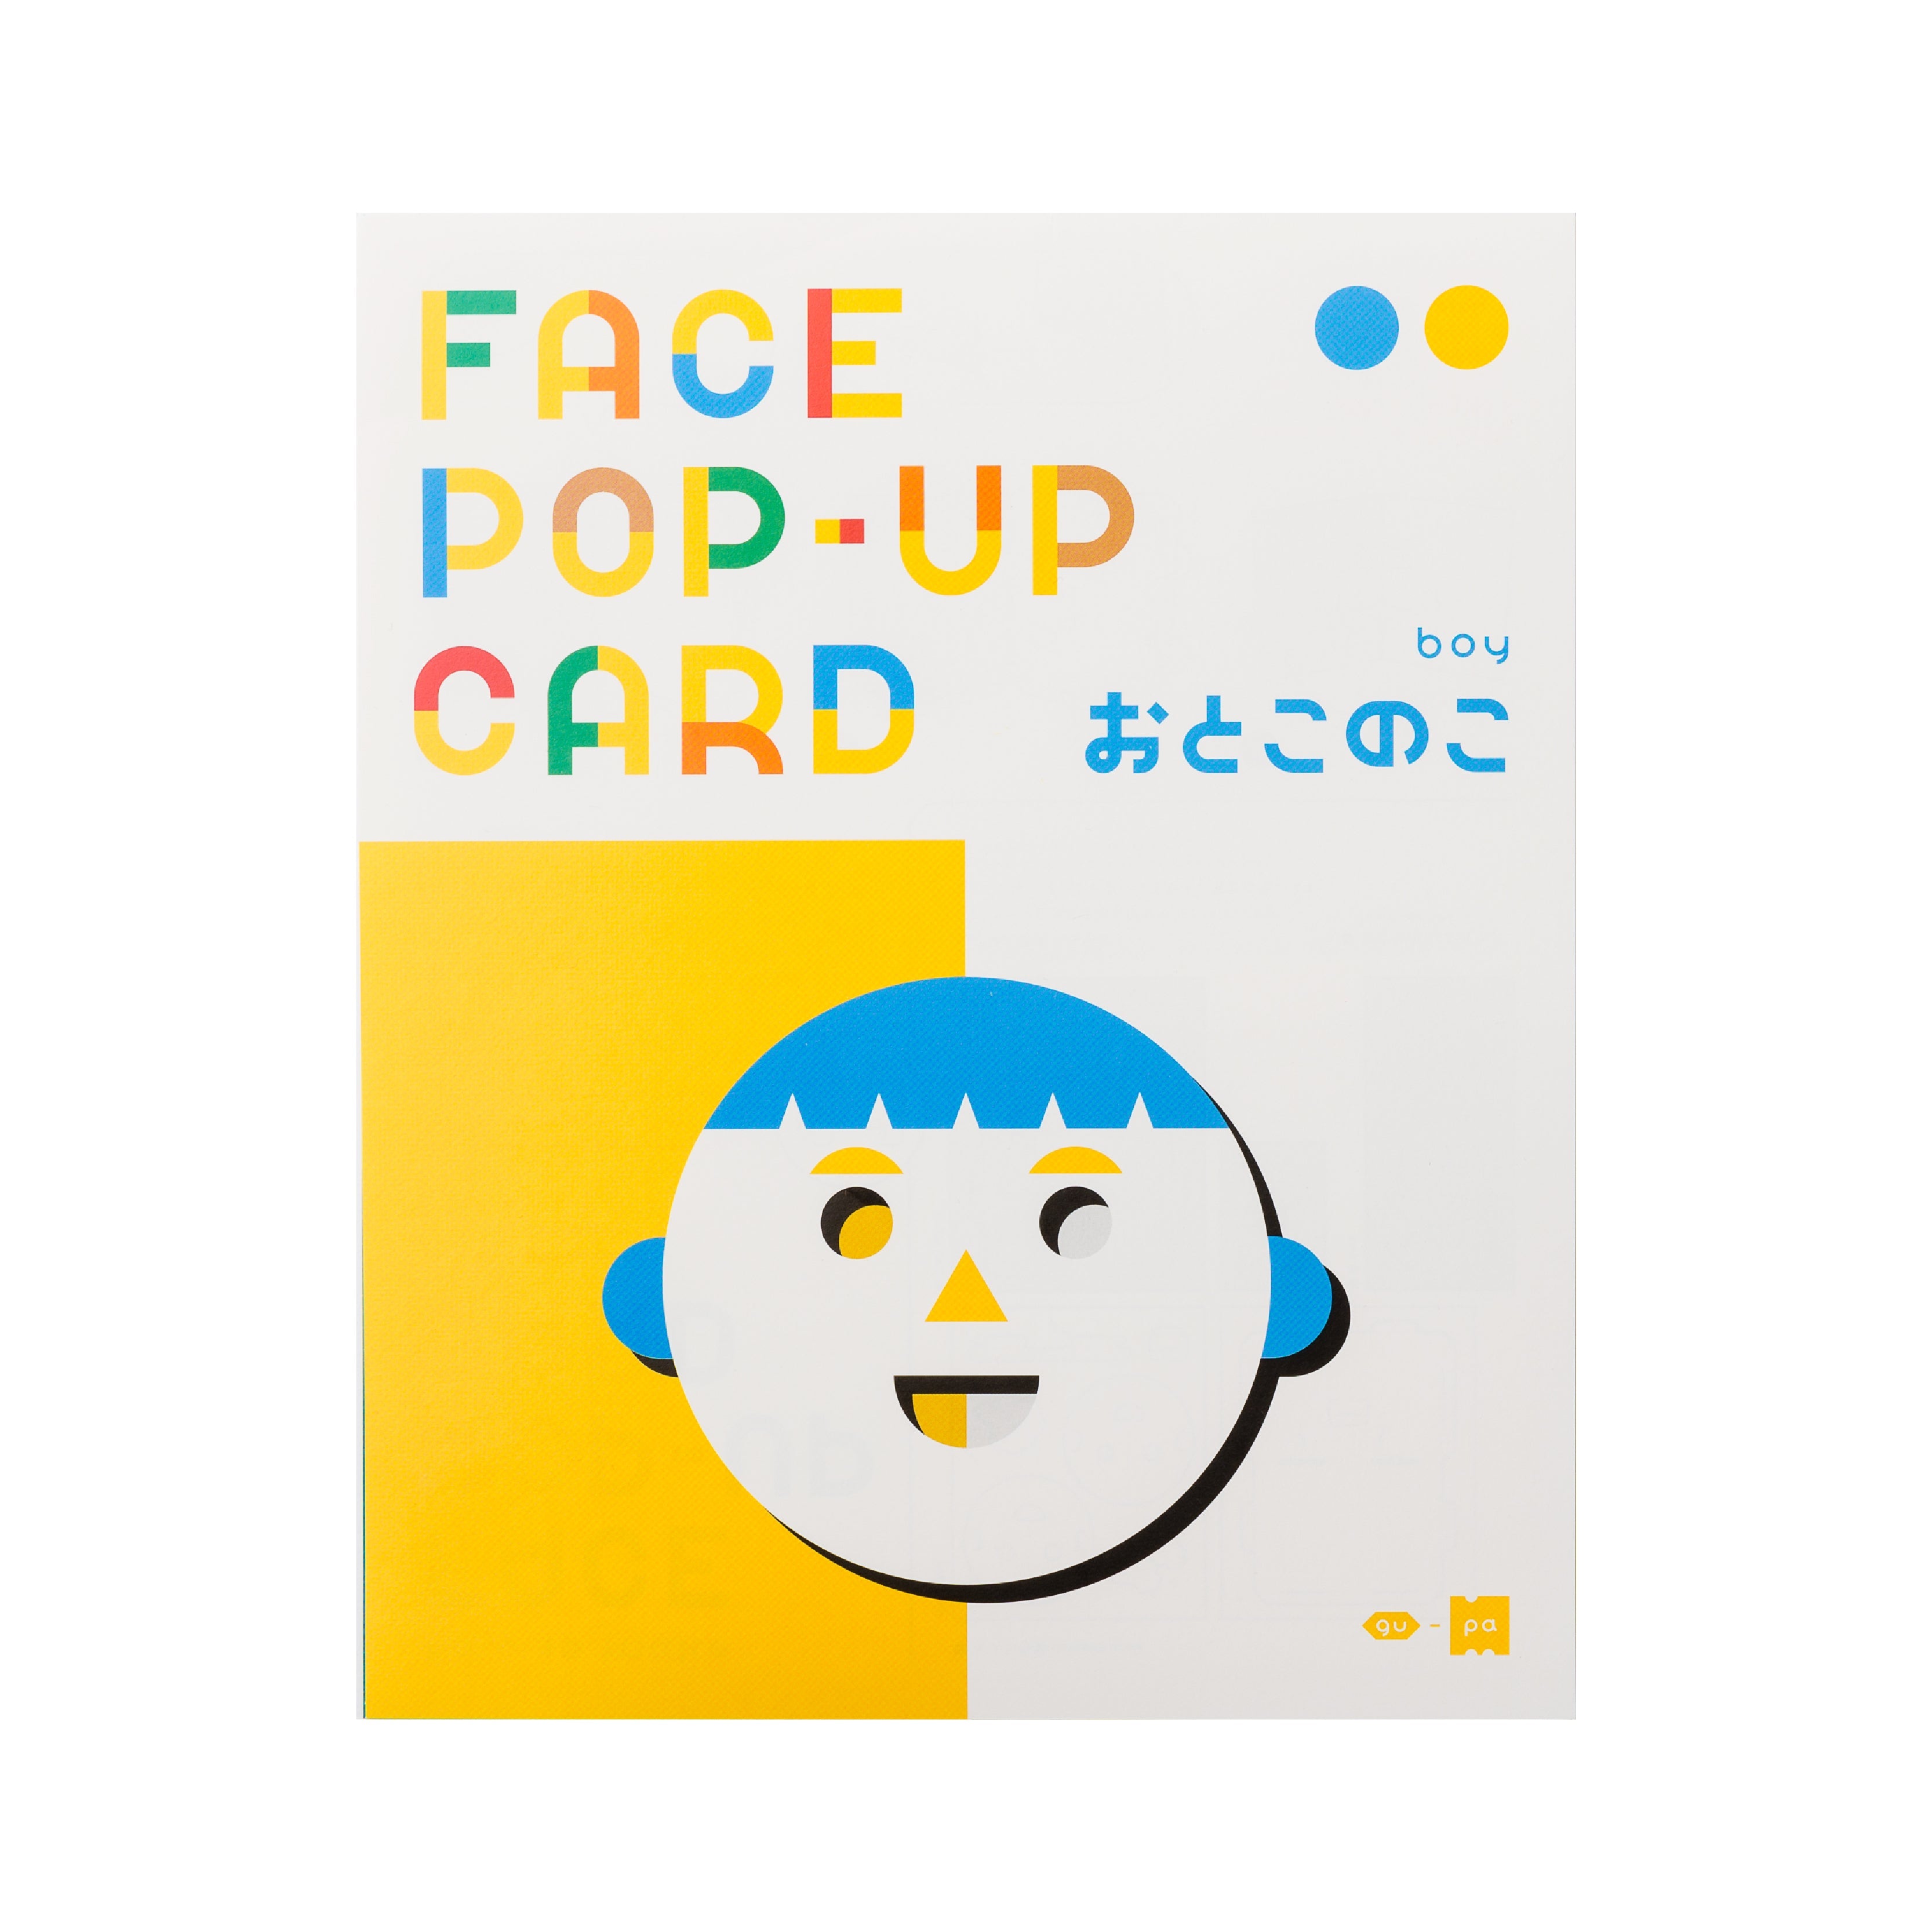 FACE POP UP CARD boy